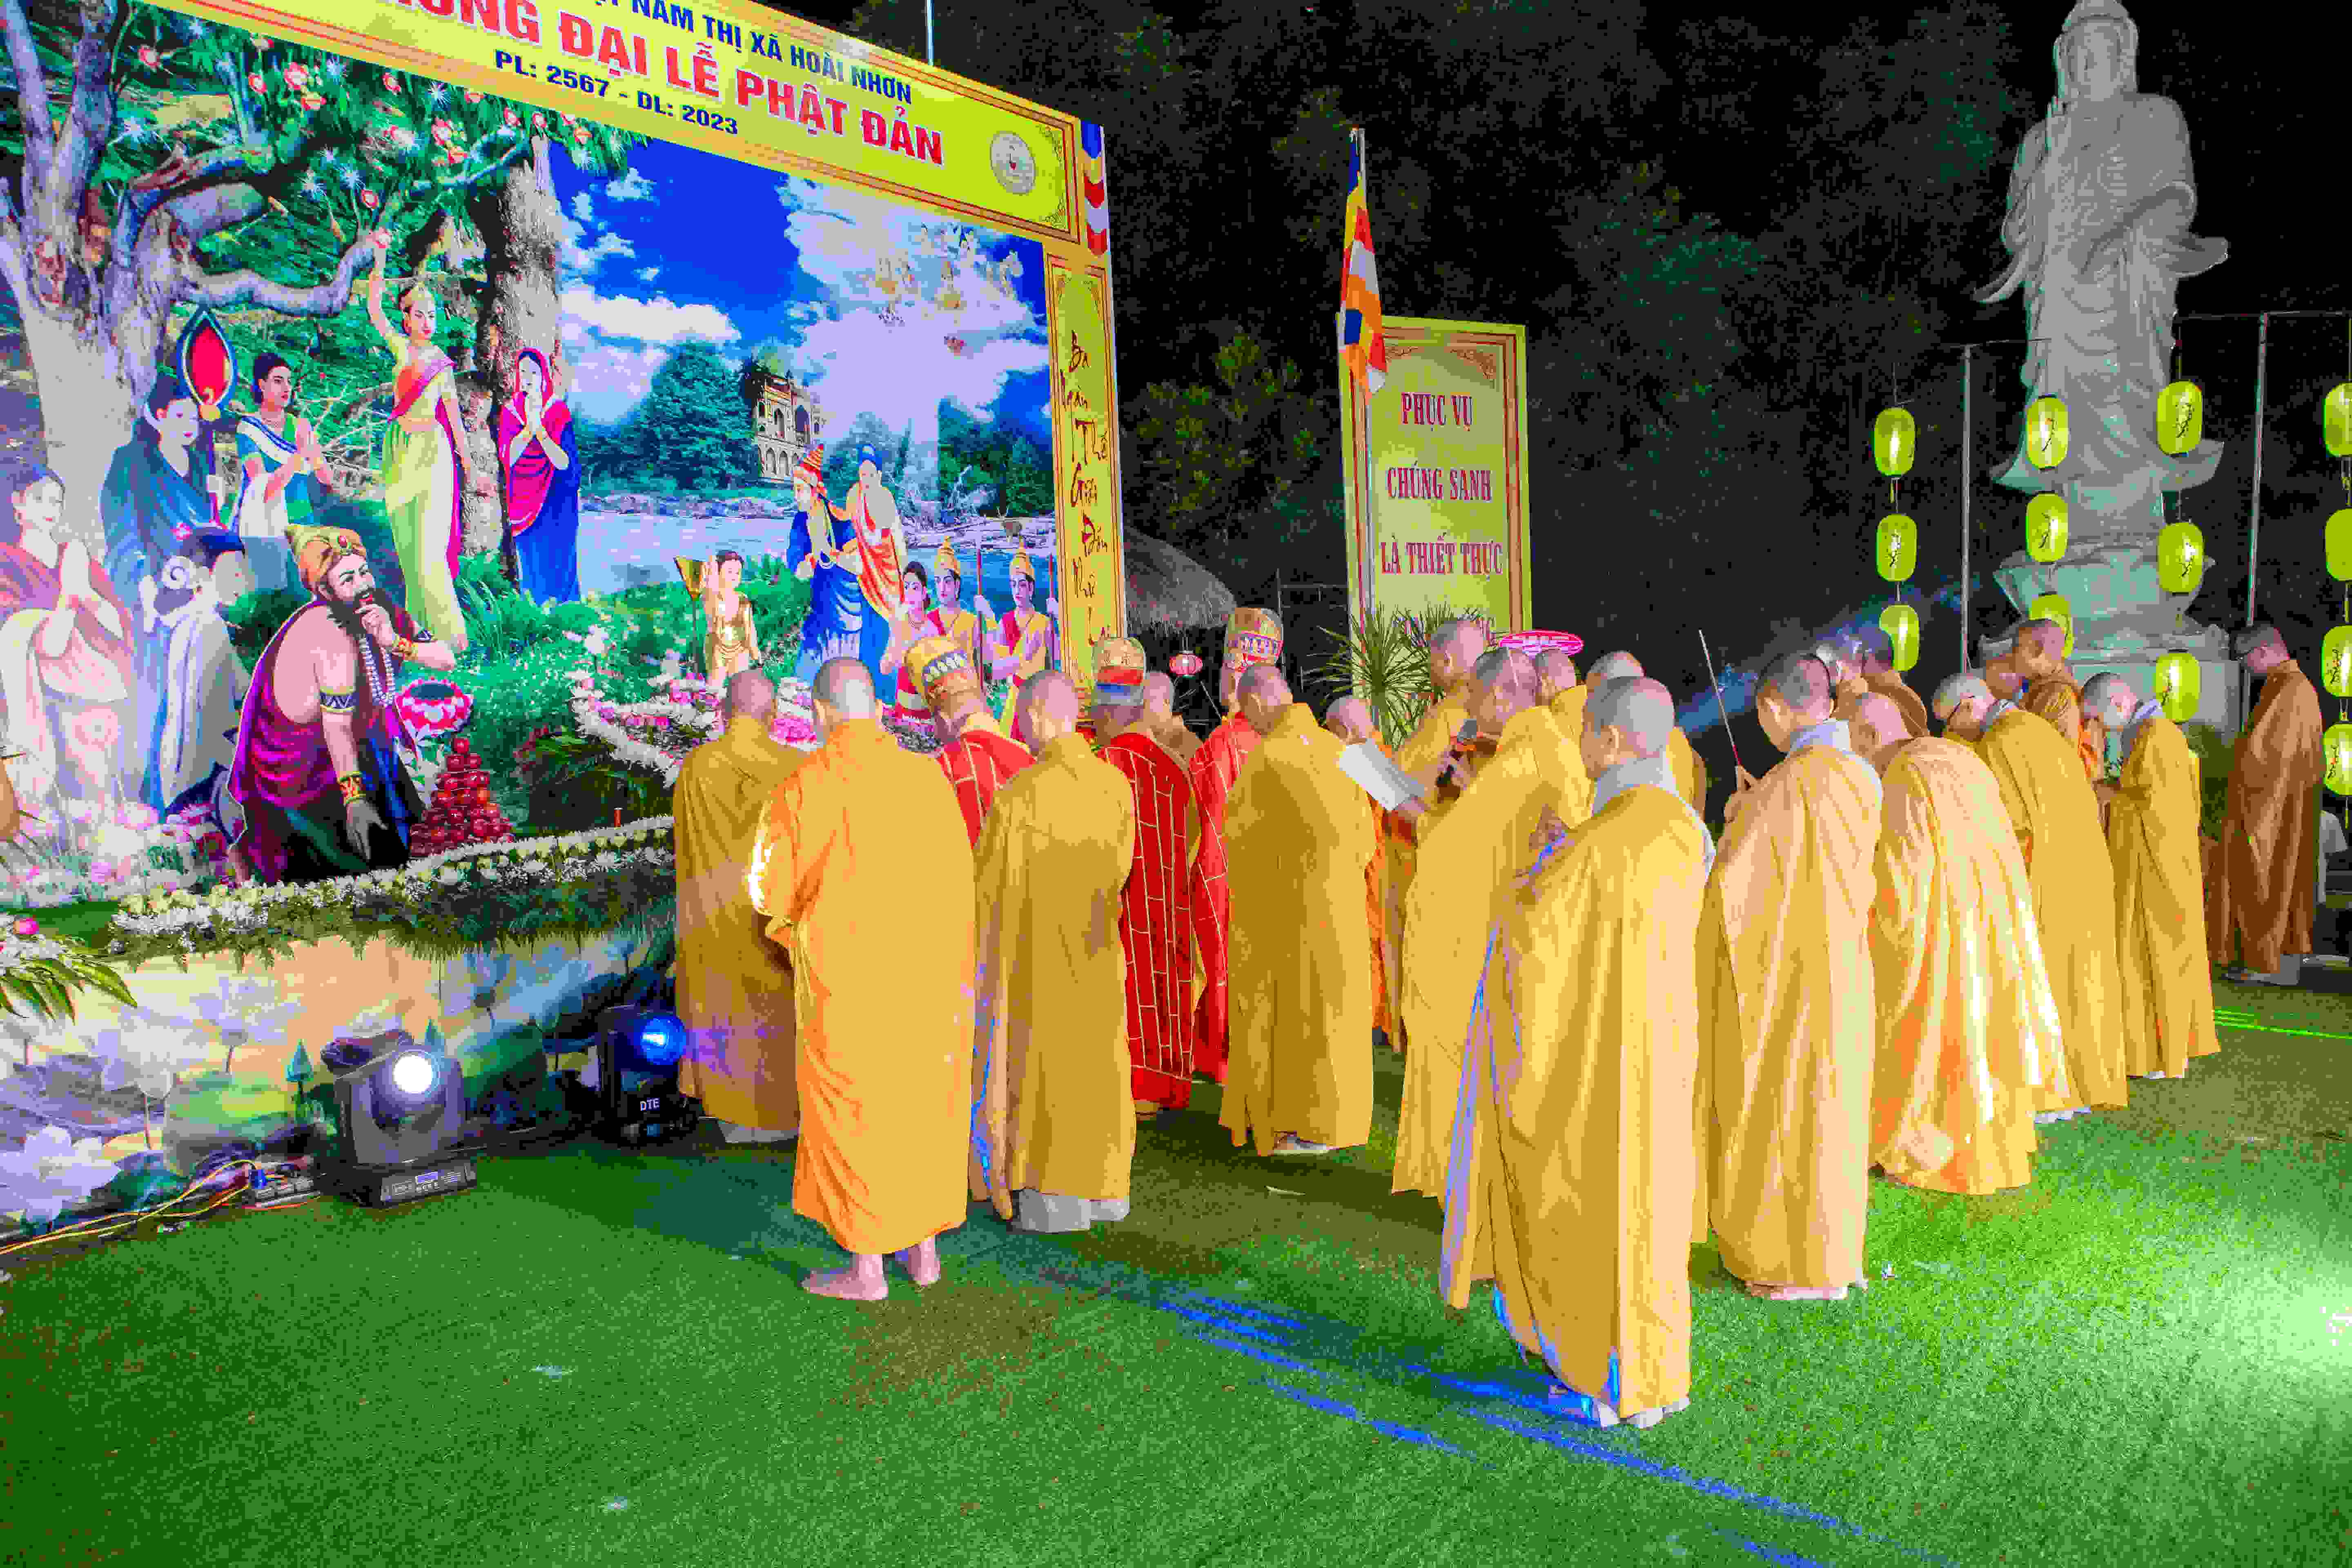 Hoài Nhơn Ban Trị sự trang nghiêm tổ chức Đại lễ Phật đản PL. 2567